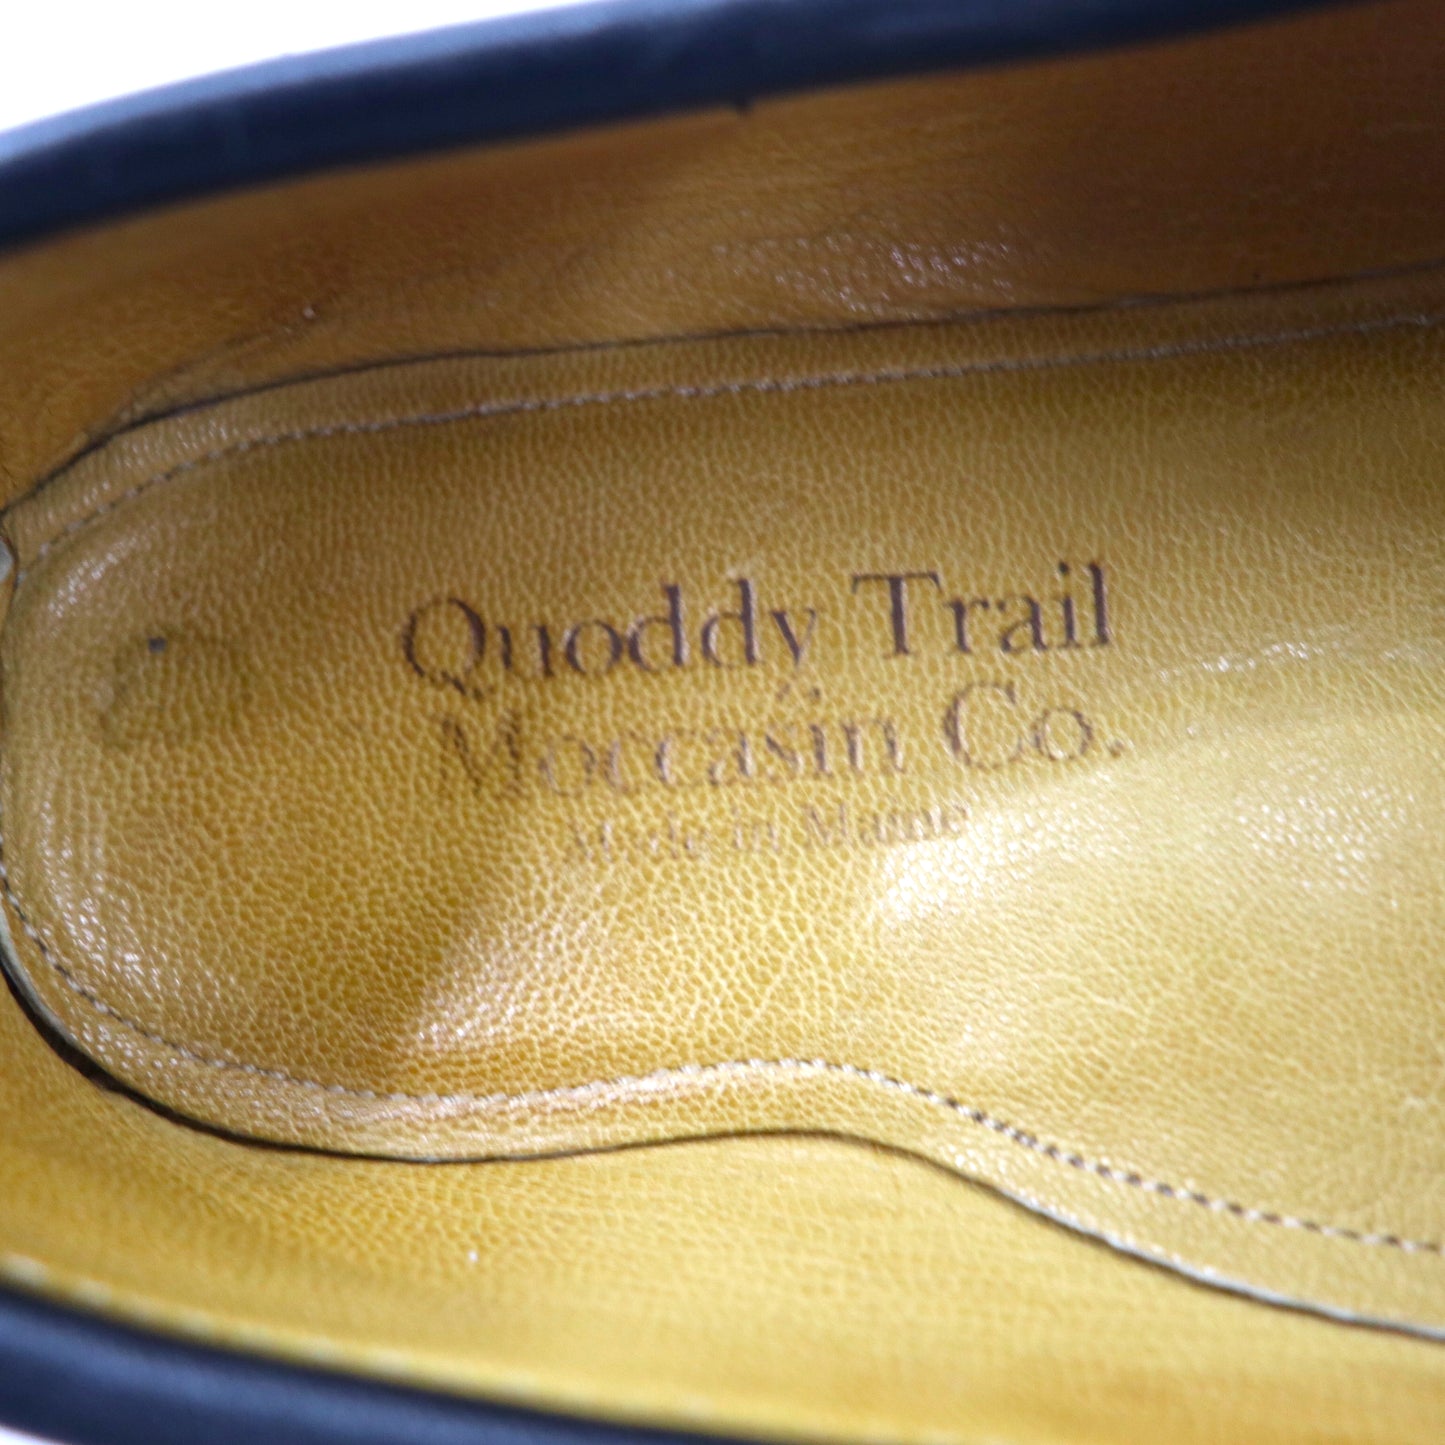 Quoddy Trail Moccasin Co. スリッポン ローファー 27.5cm ブラック レザー HANDMADE in Maine USA